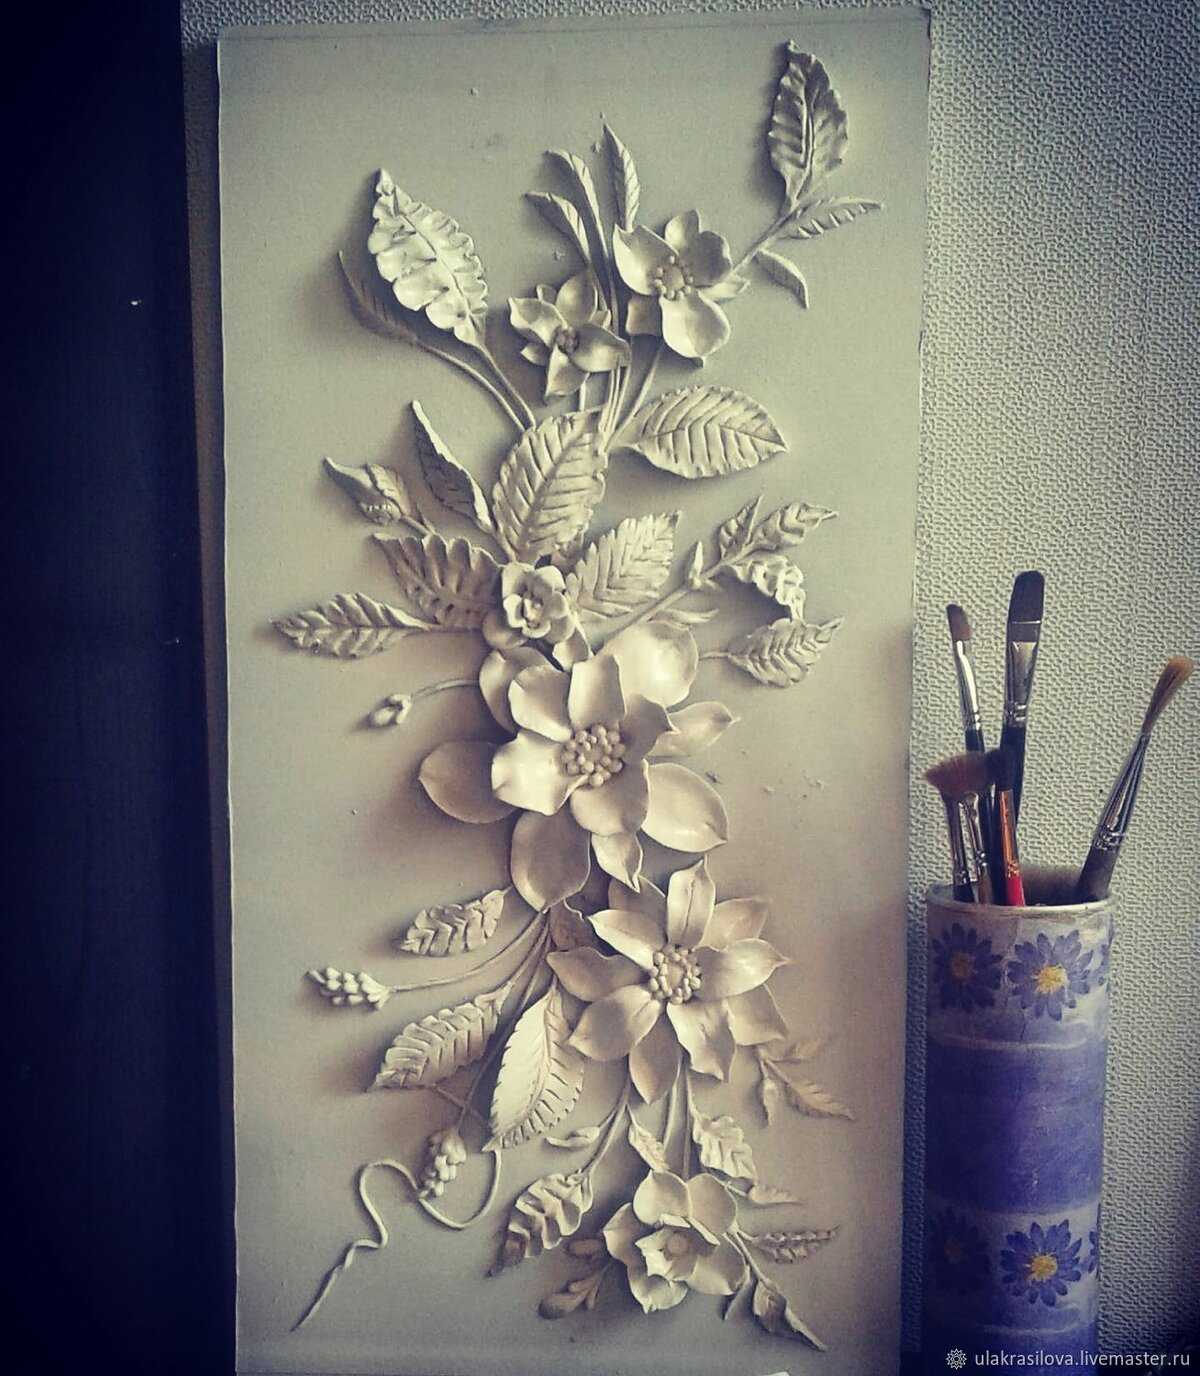 Барельеф на стене в квартире своими руками: как делать птицы, цветы или геометрические фигуры из гипсовой смеси, обязательные требования к шпатлевке и трафаретам